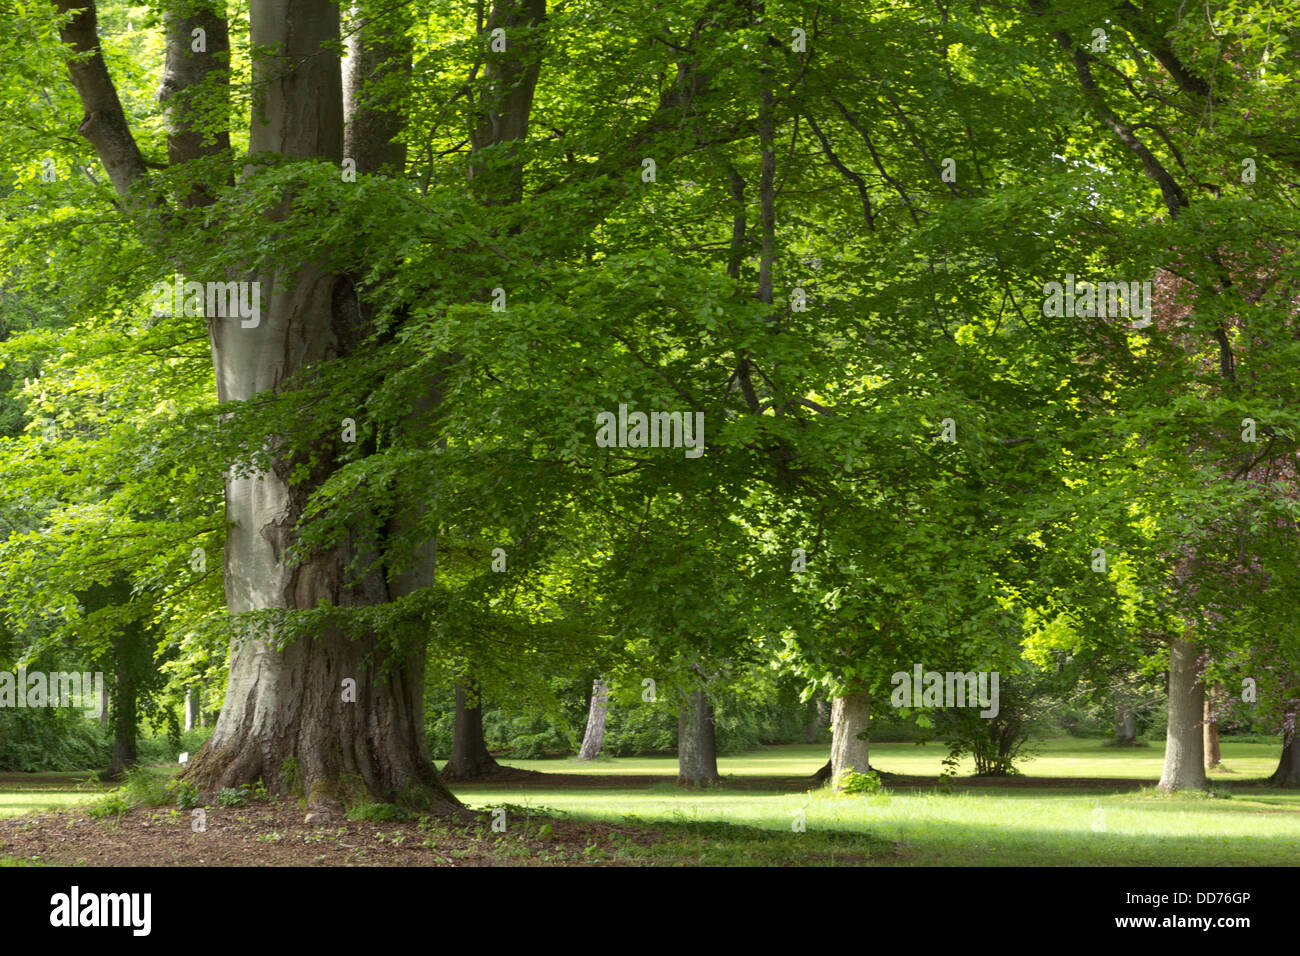 Un grand chêne arbre dans un parc Banque D'Images